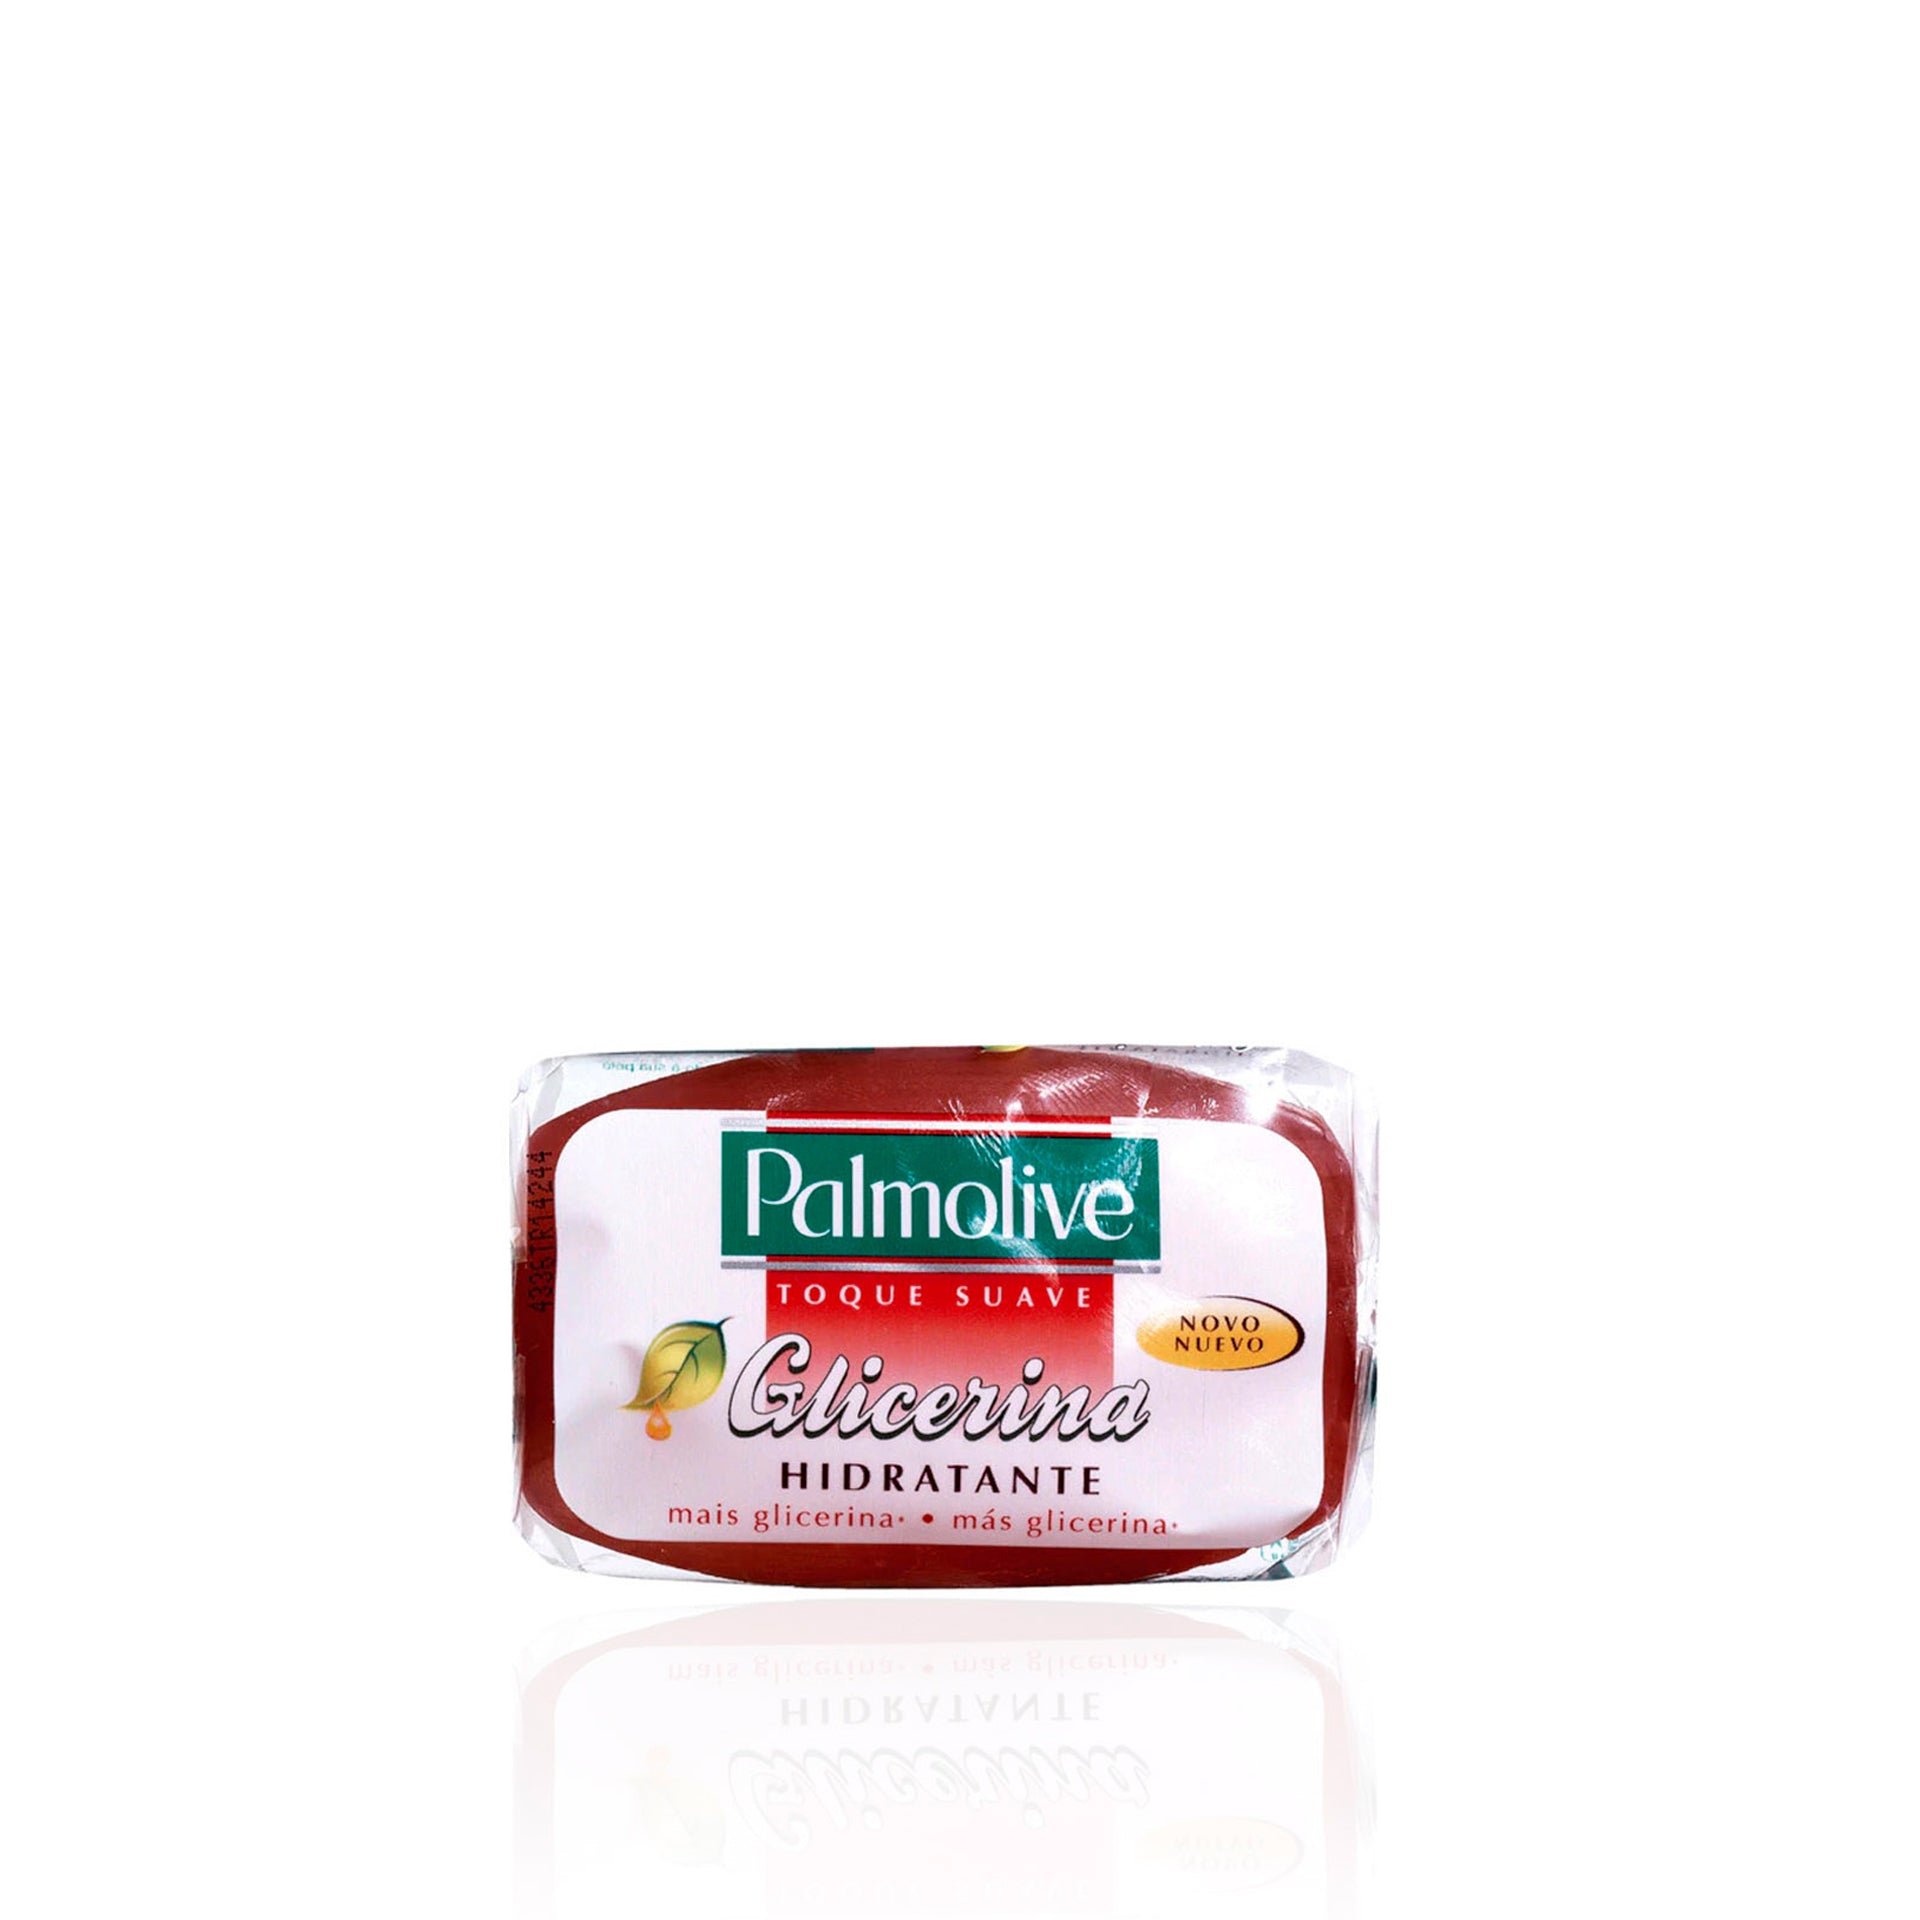 Palmolive Toque Suave Sabonete de Glicerina Hidratante 90 g